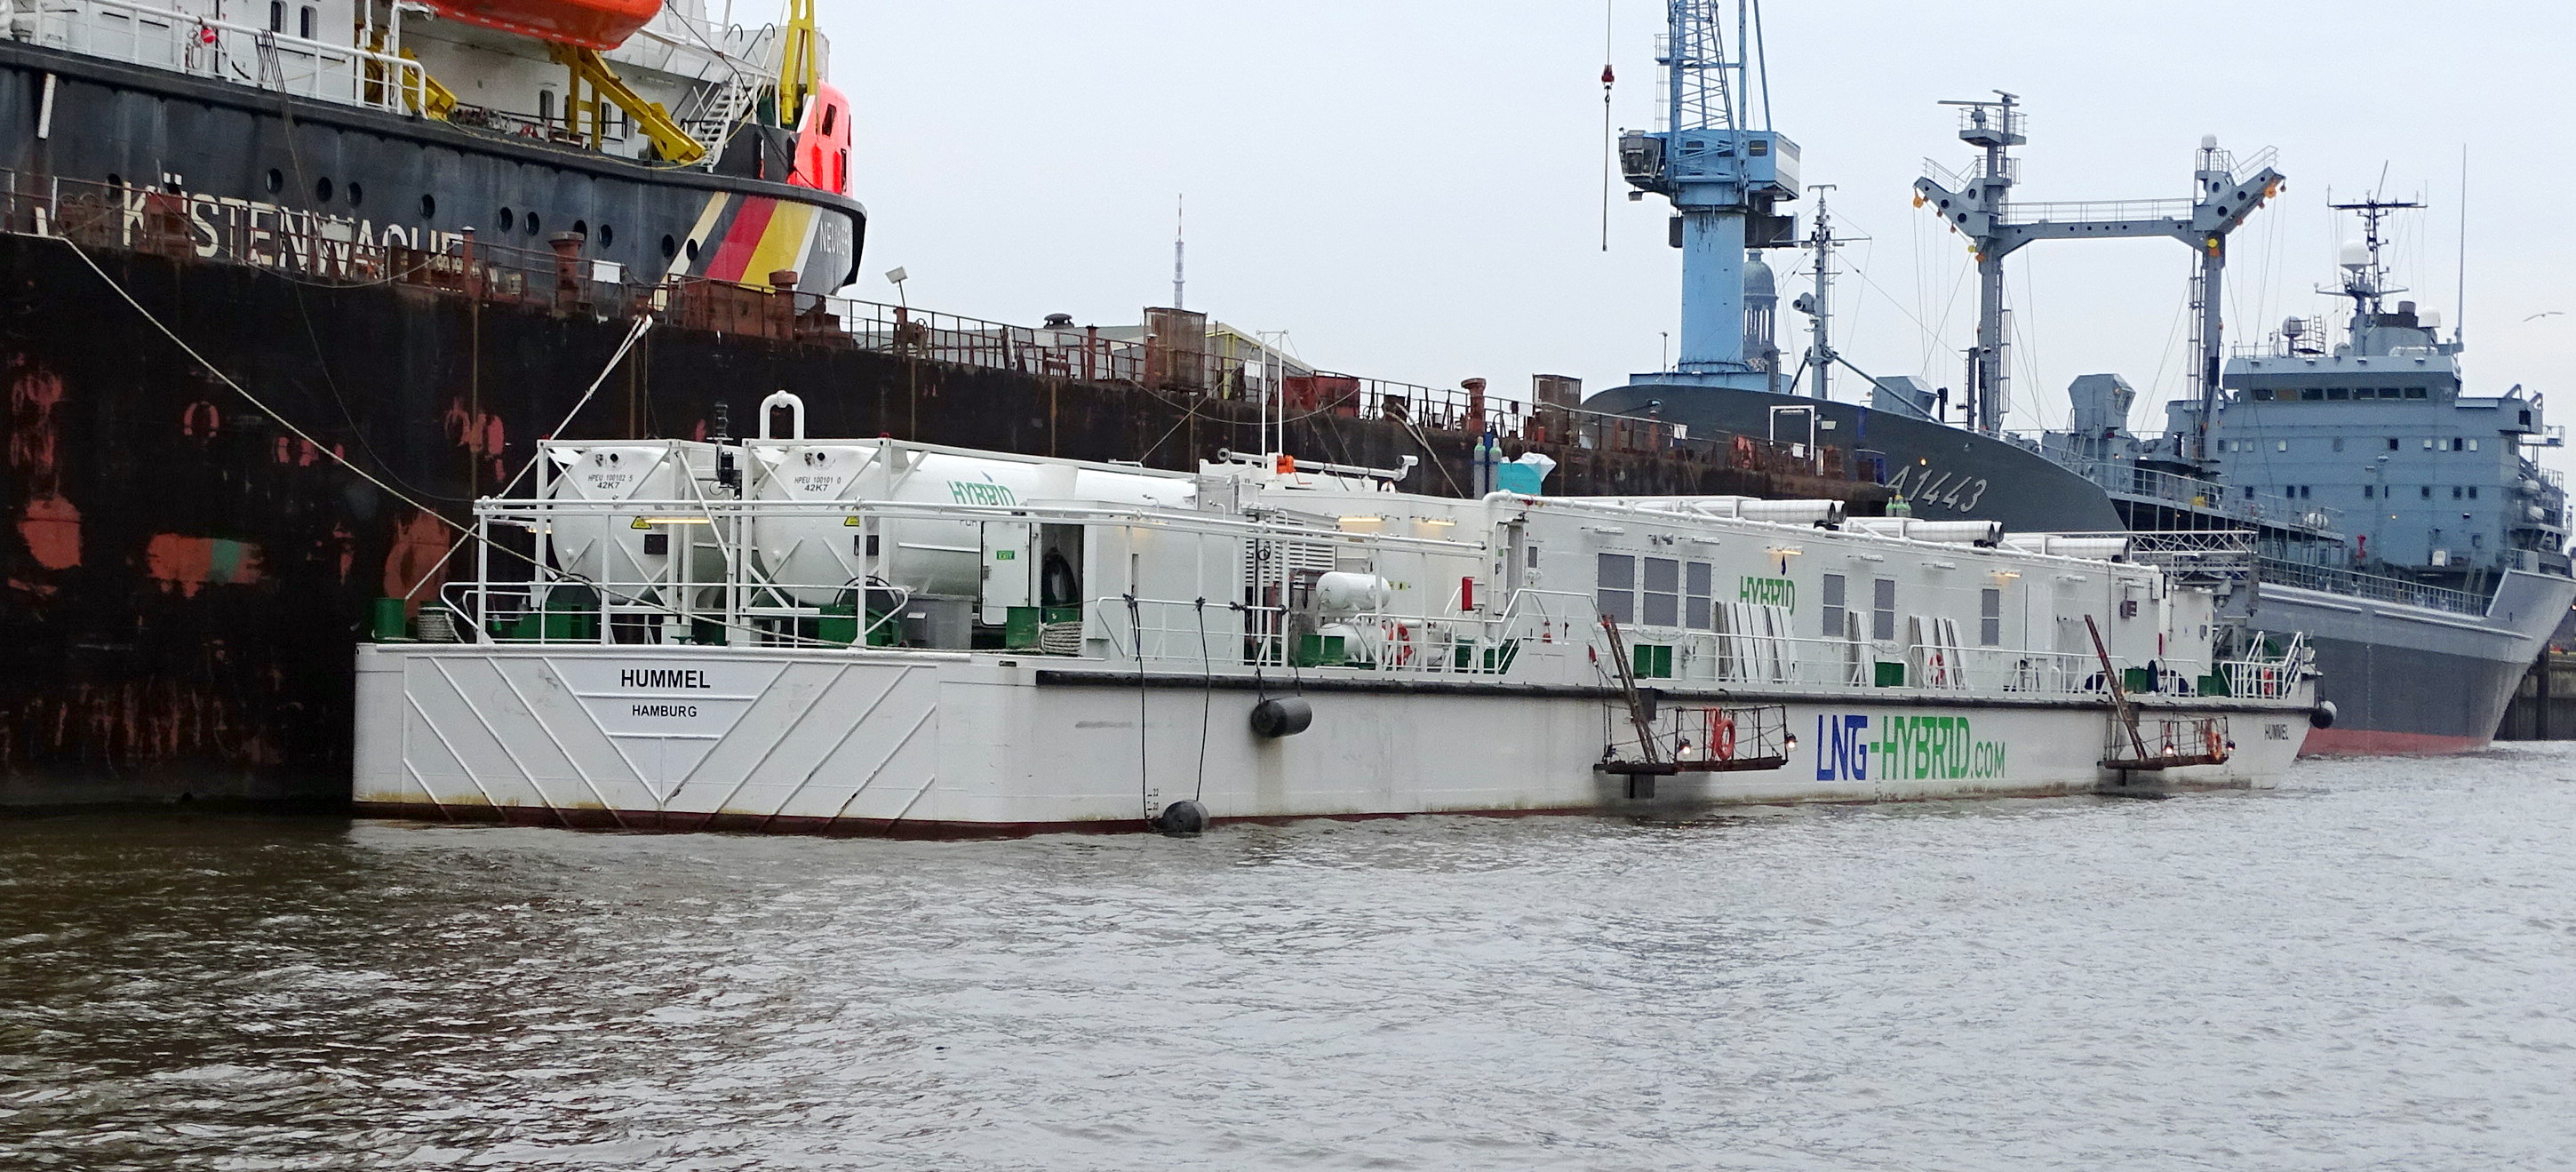 Hummel -- LNG Barge